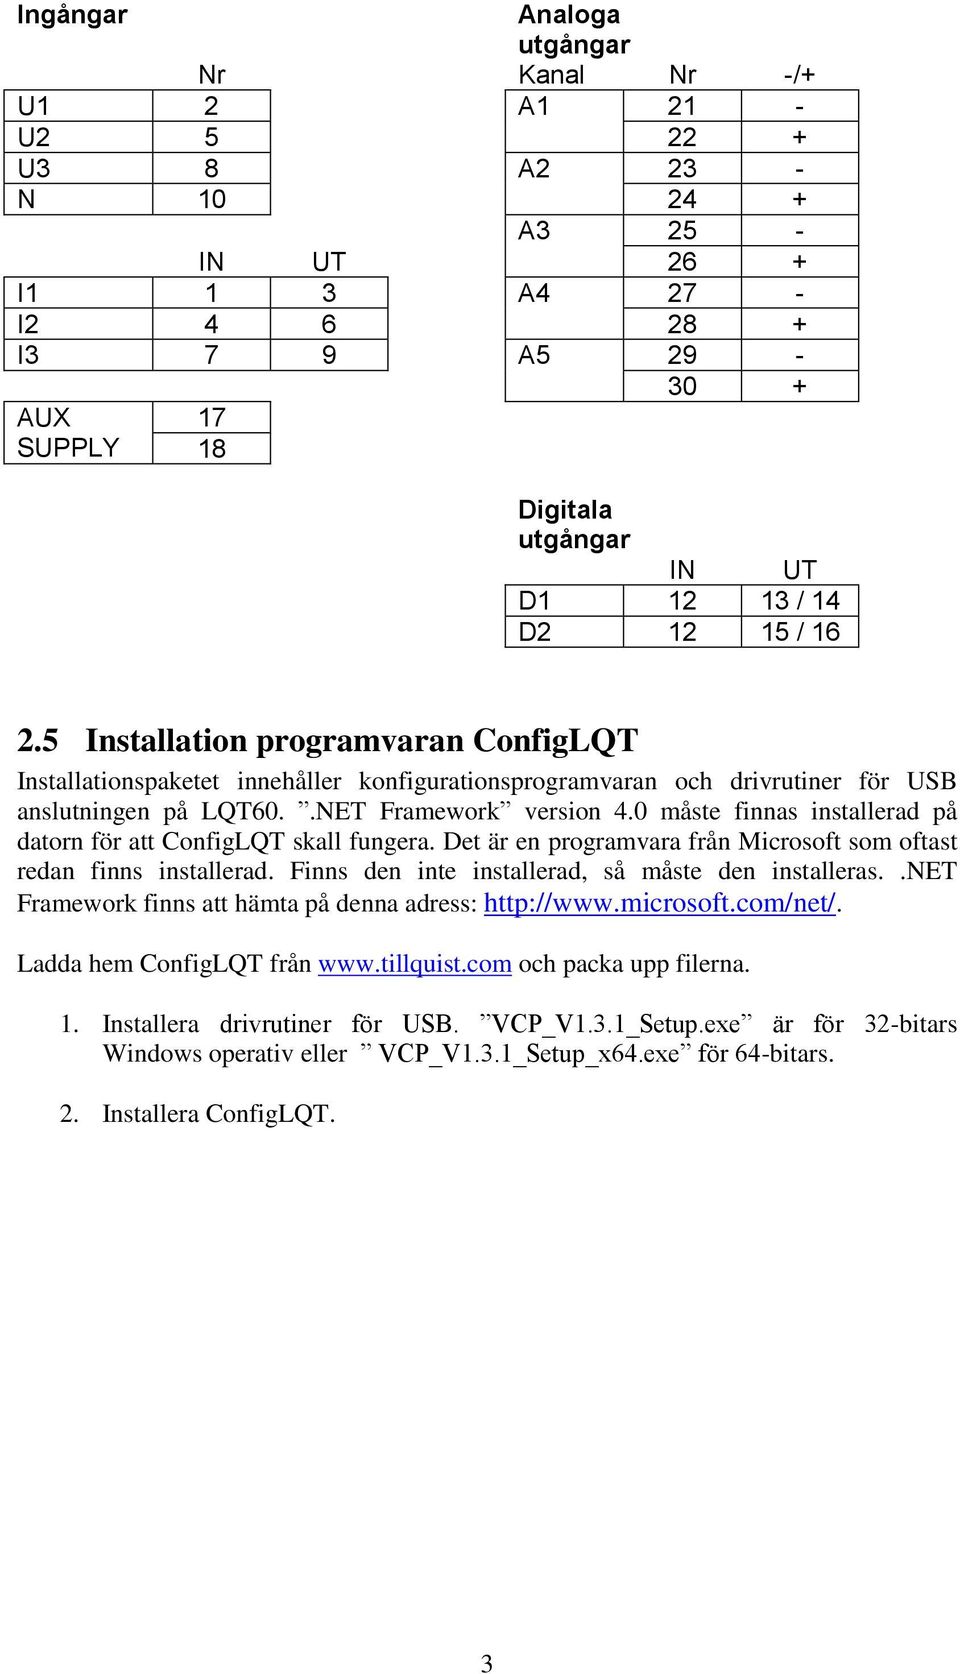 0 måste finnas installerad på datorn för att ConfigLQT skall fungera. Det är en programvara från Microsoft som oftast redan finns installerad. Finns den inte installerad, så måste den installeras.